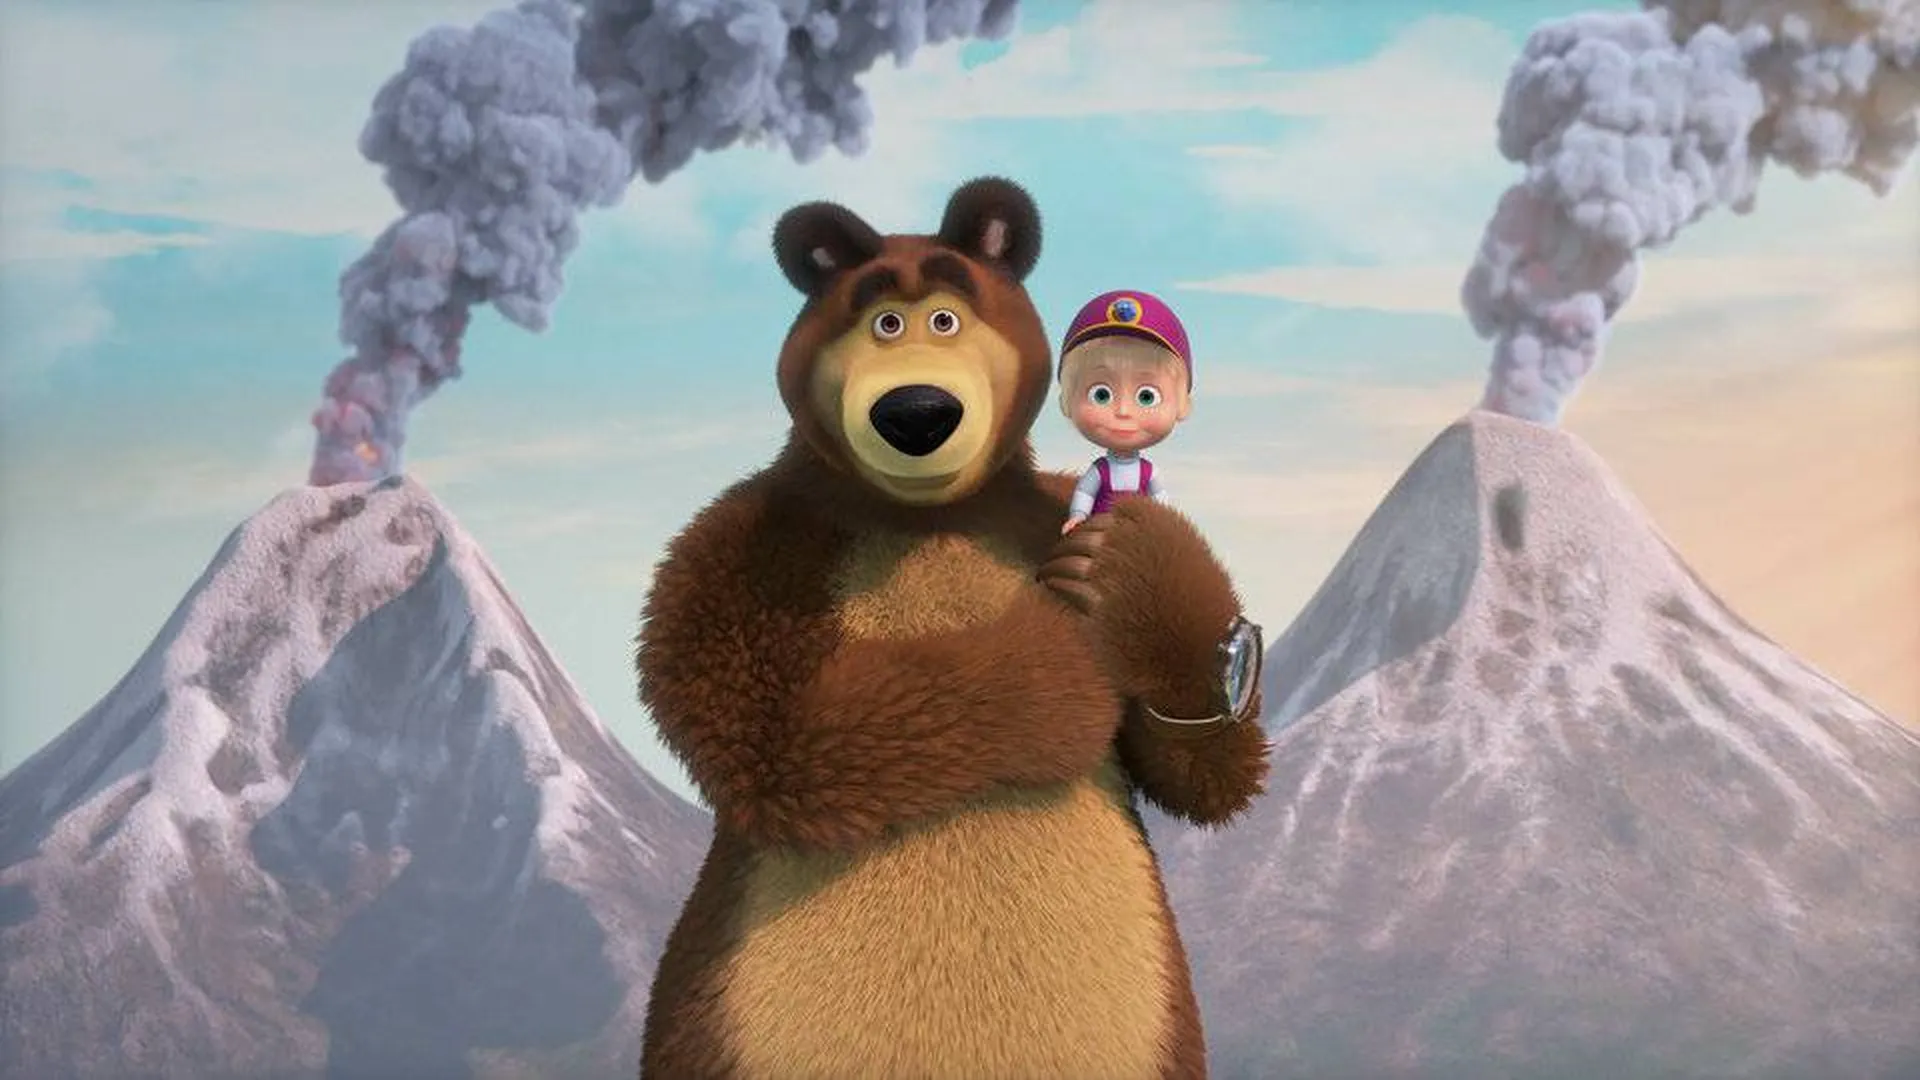 Изображение: Мультфильм "Маша и медведь", студия Animaccord